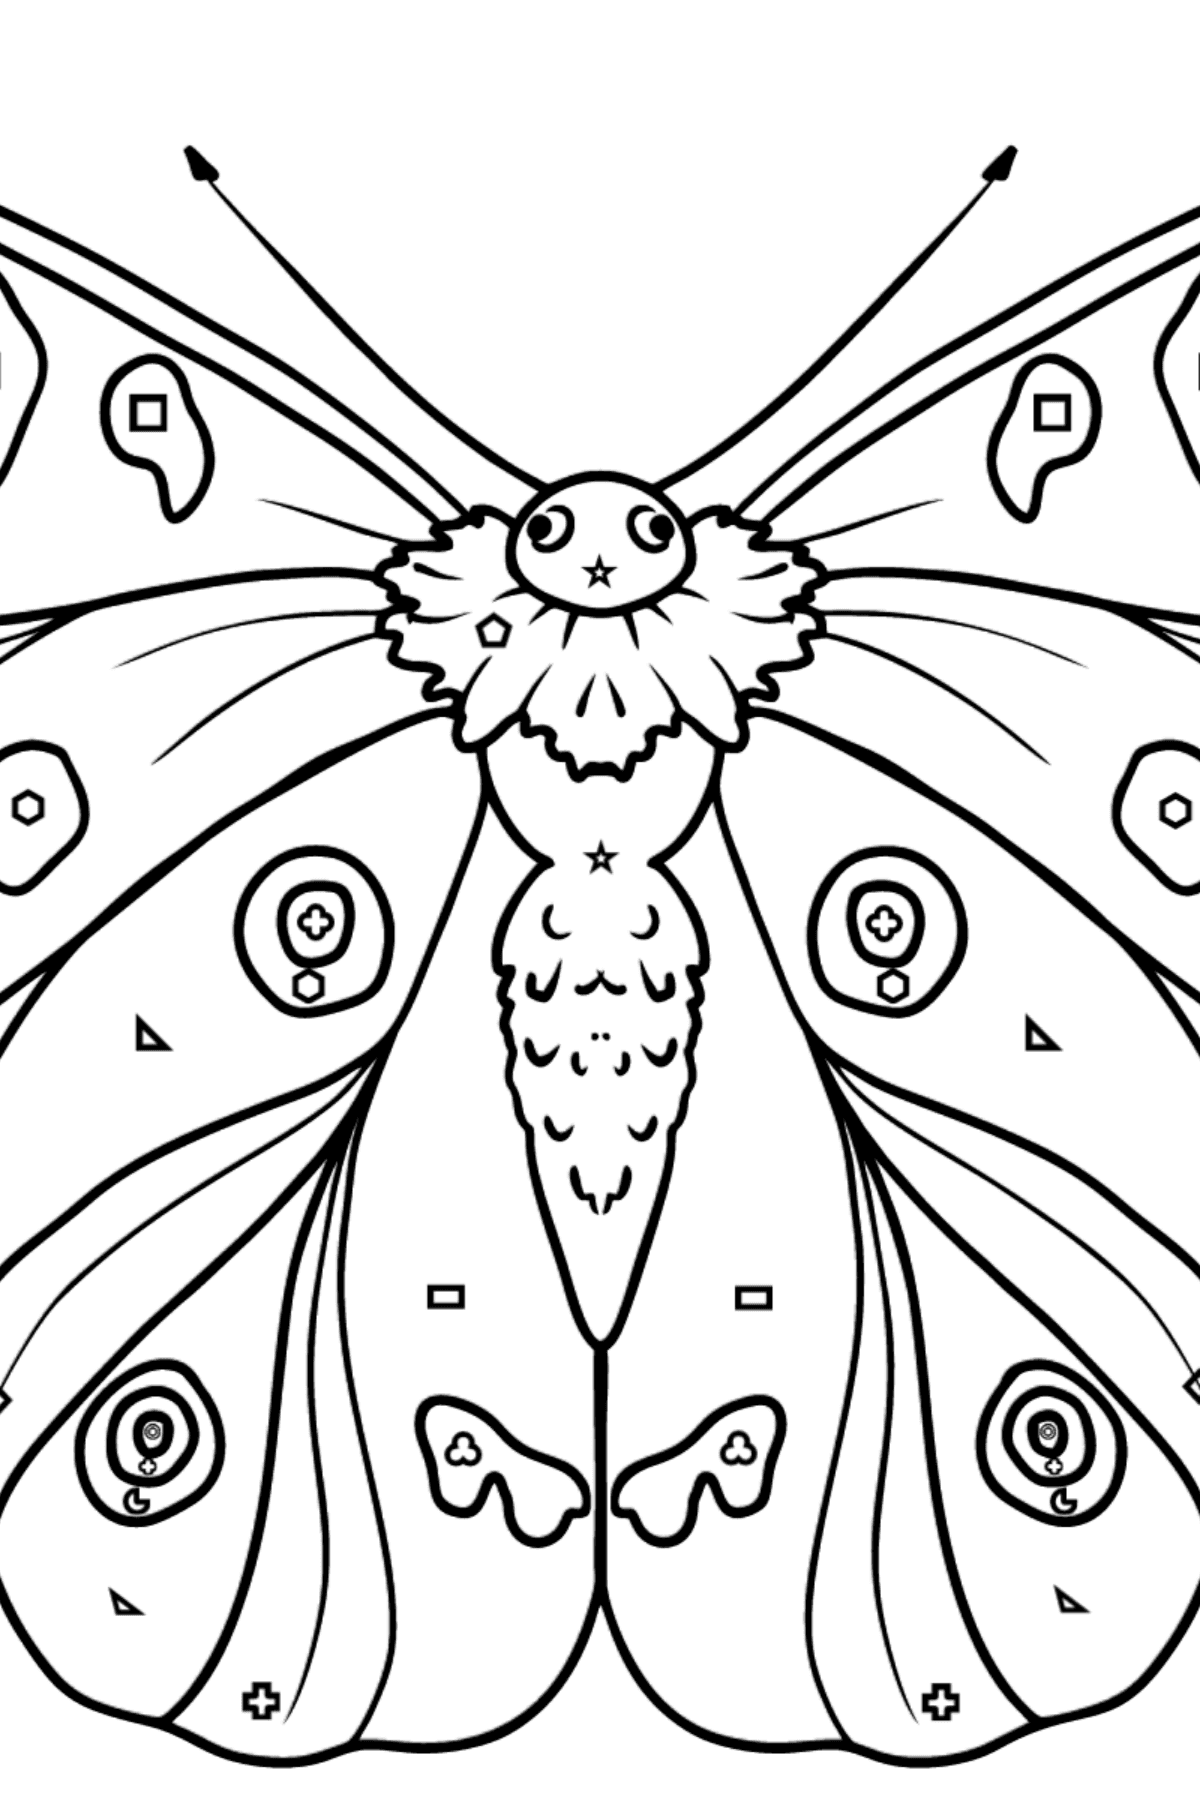 Kleurplaat vlinder apollo - Kleuren met geometrische figuren voor kinderen